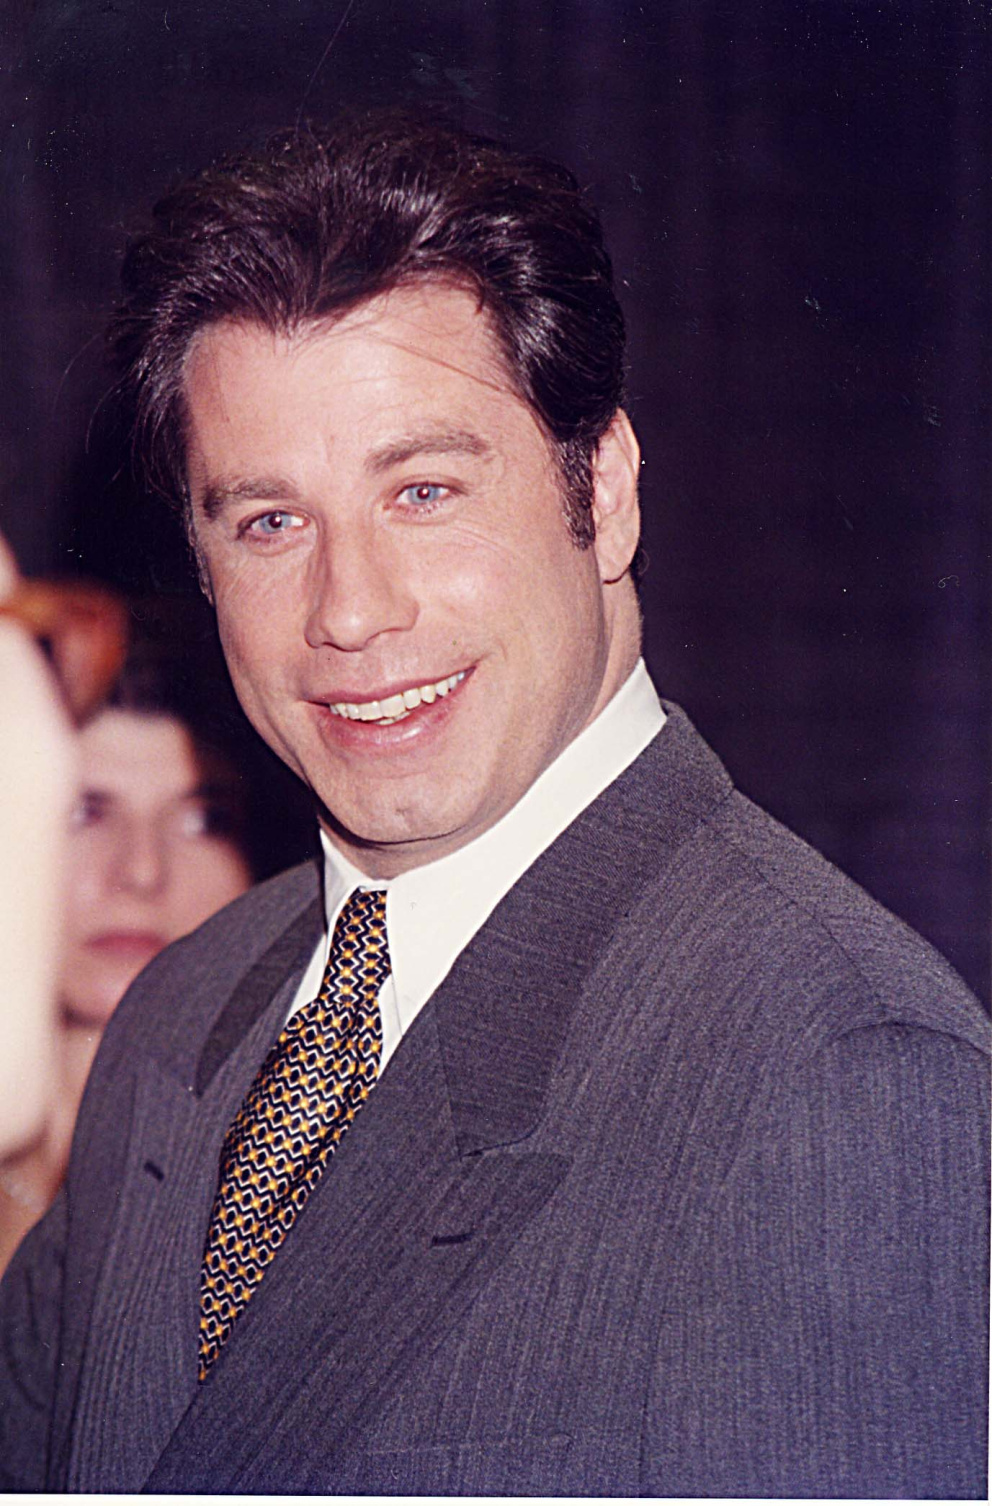 John Travolta v 90. letech

John Travolta se proslavil již v roce 1978 svou epickou rolí ve filmu Pomáda, kde je naprosto nenahraditelný. V 90. letech měl ovšem velmi dobře rozjetou kariéru, natočil například úspěšné snímky Kdopak to mluví a nezapomenutelné Pulp Fiction.
